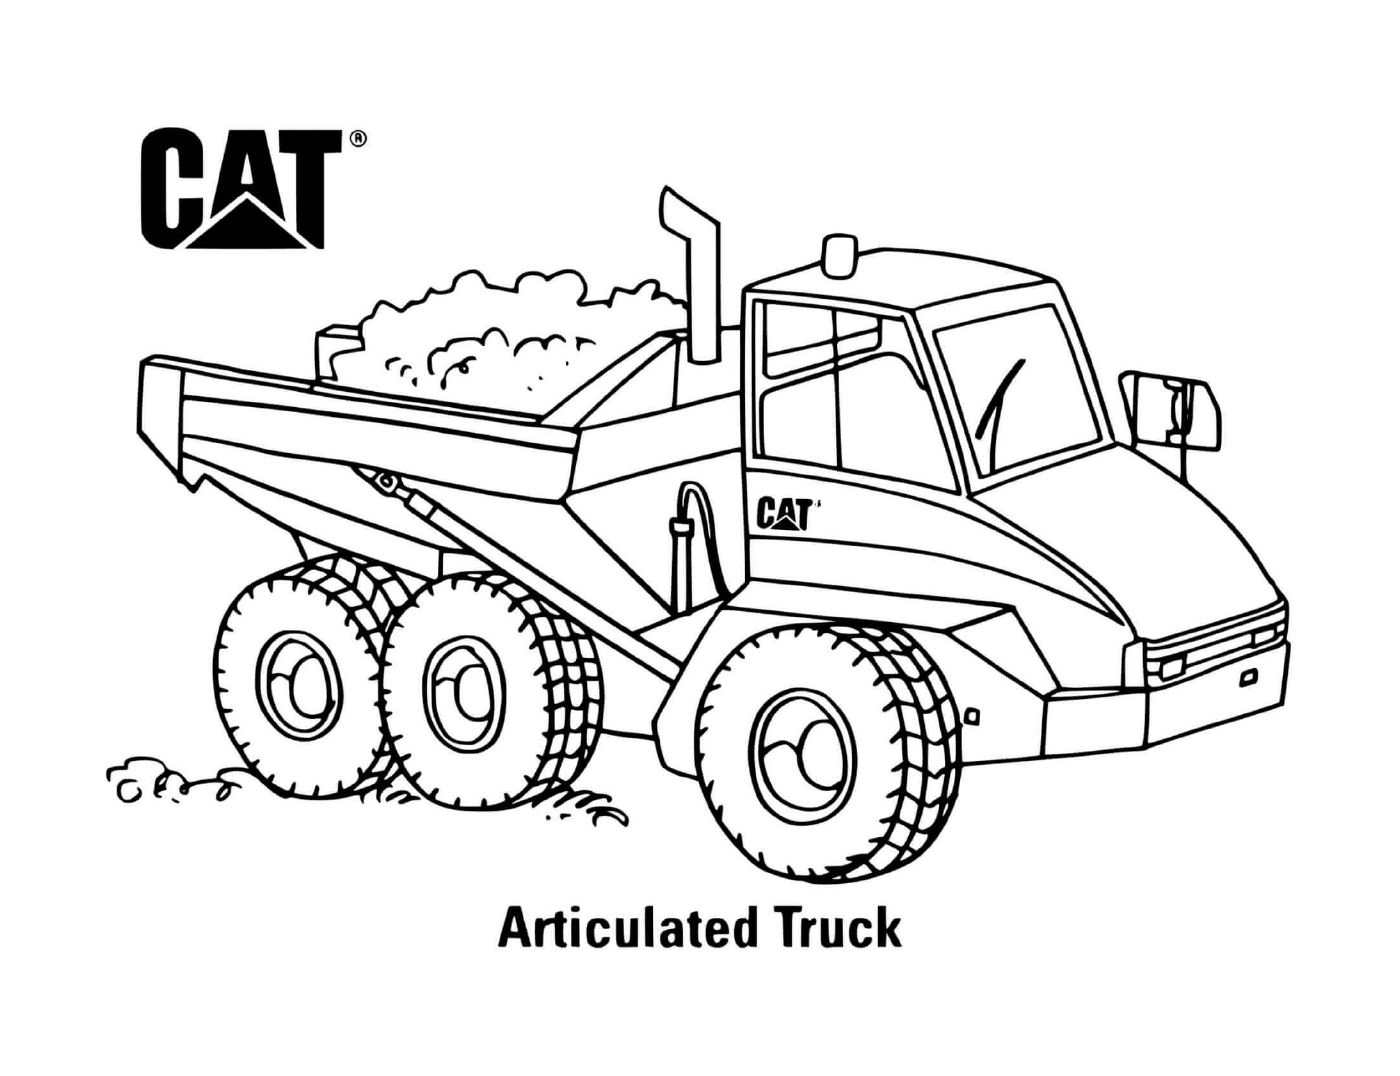  使用在建筑工地的CAT式散货卡车 